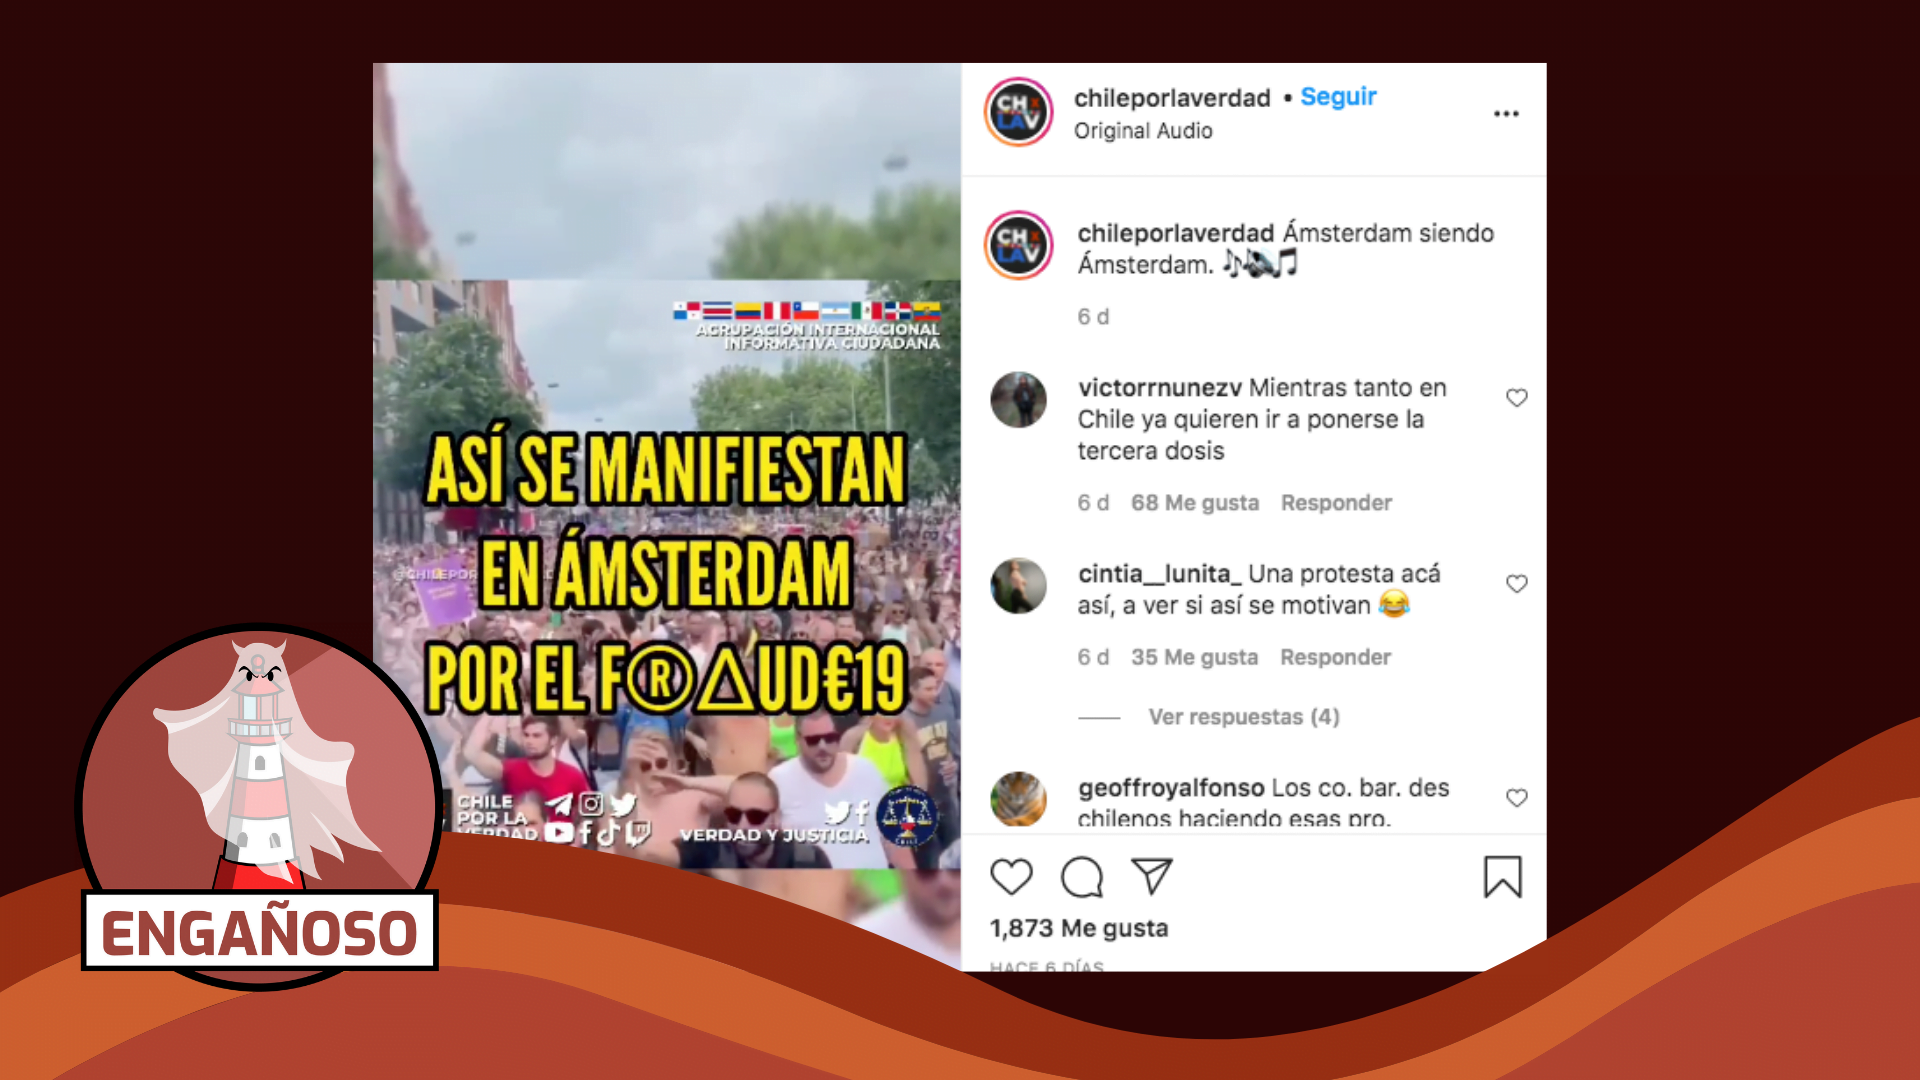 Read more about the article (Video) “Así se manifiestan en Ámsterdam por el fraude-19”: #Engañoso